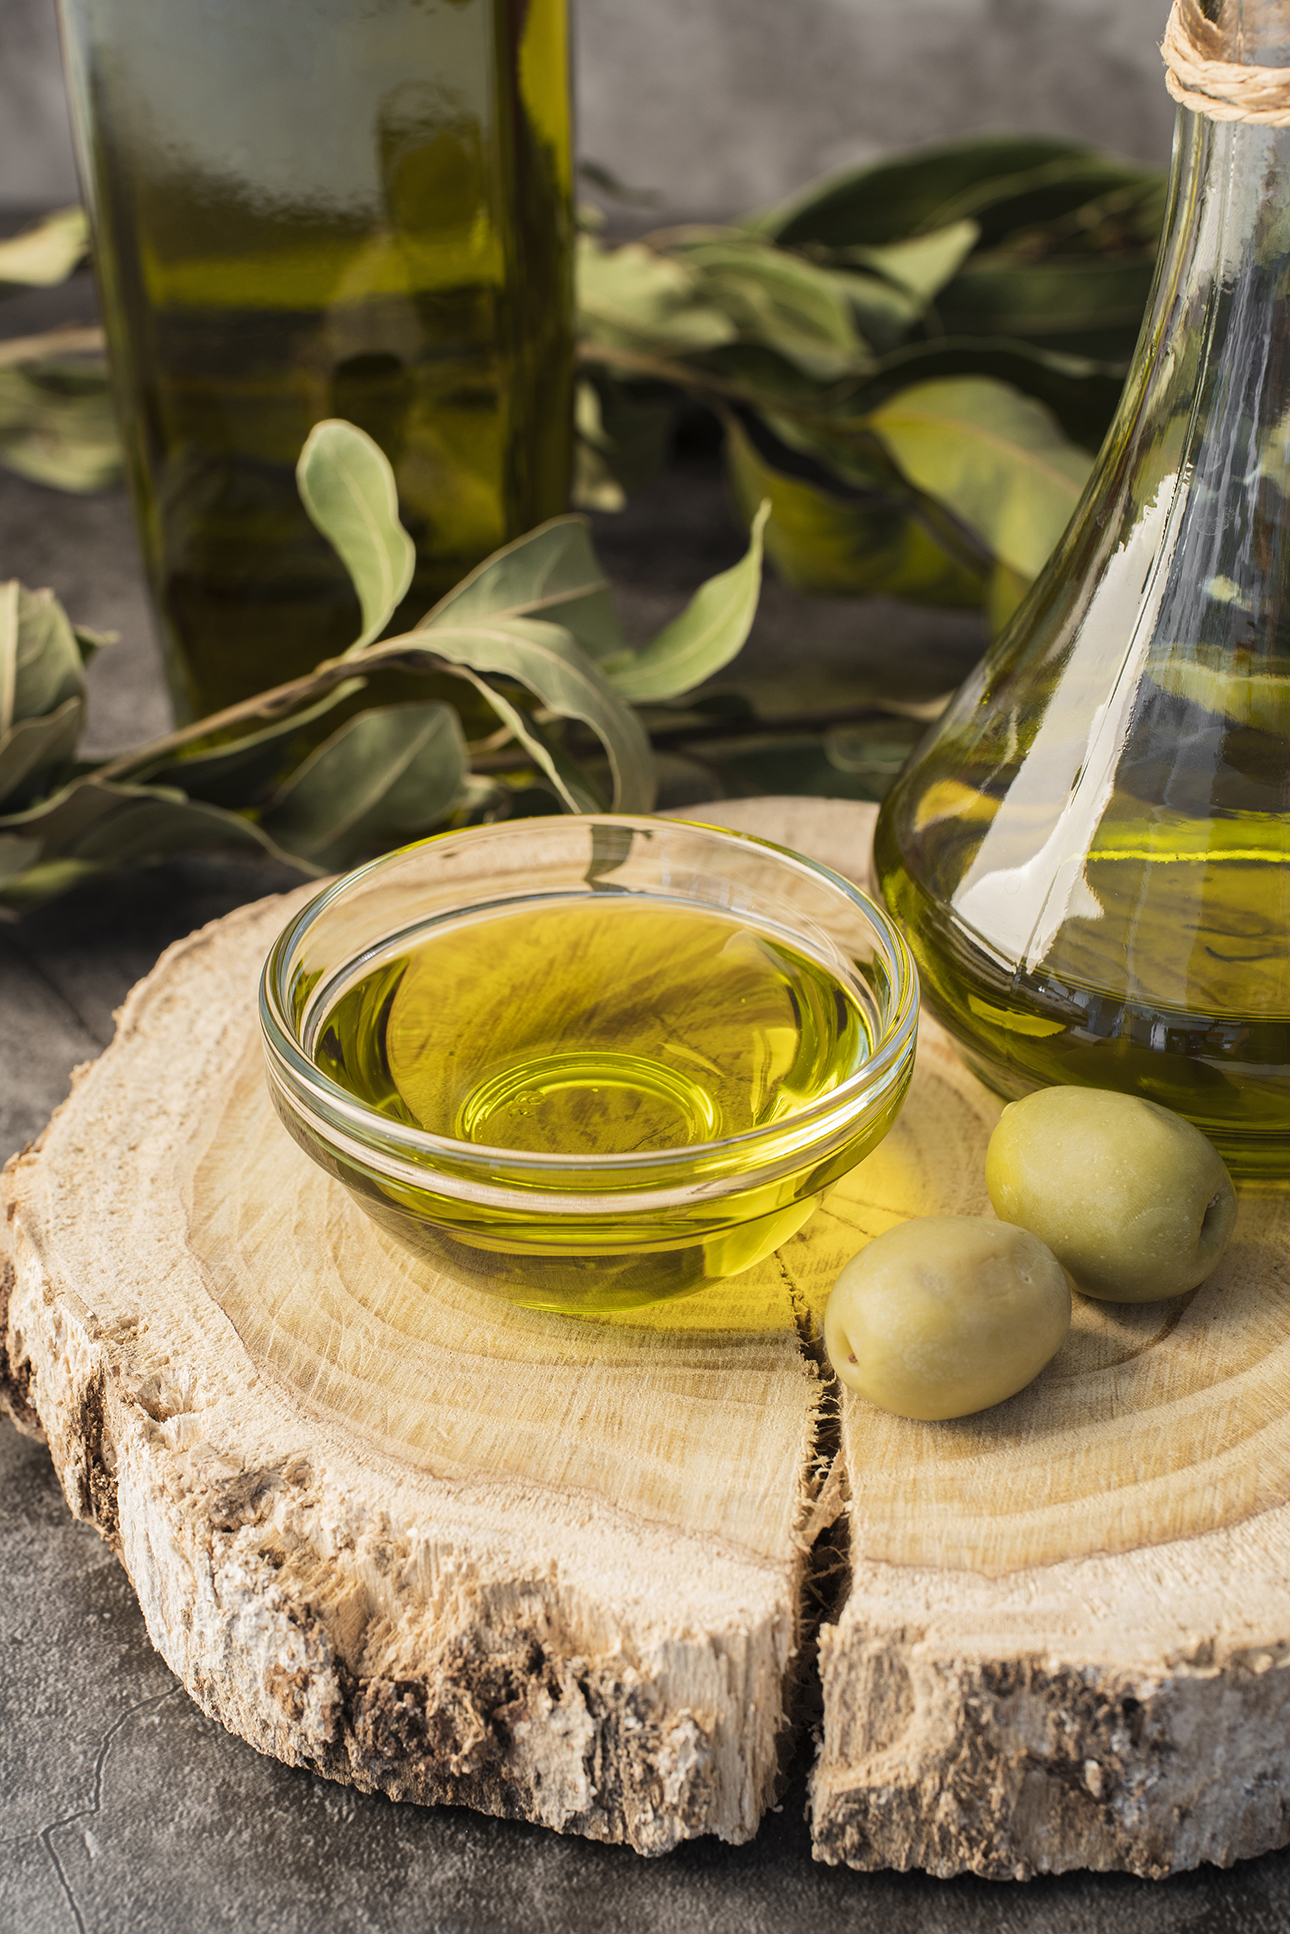 올리브 오일에 대한 오해와 진실: Mitos y verdades sobre el aceite de oliva